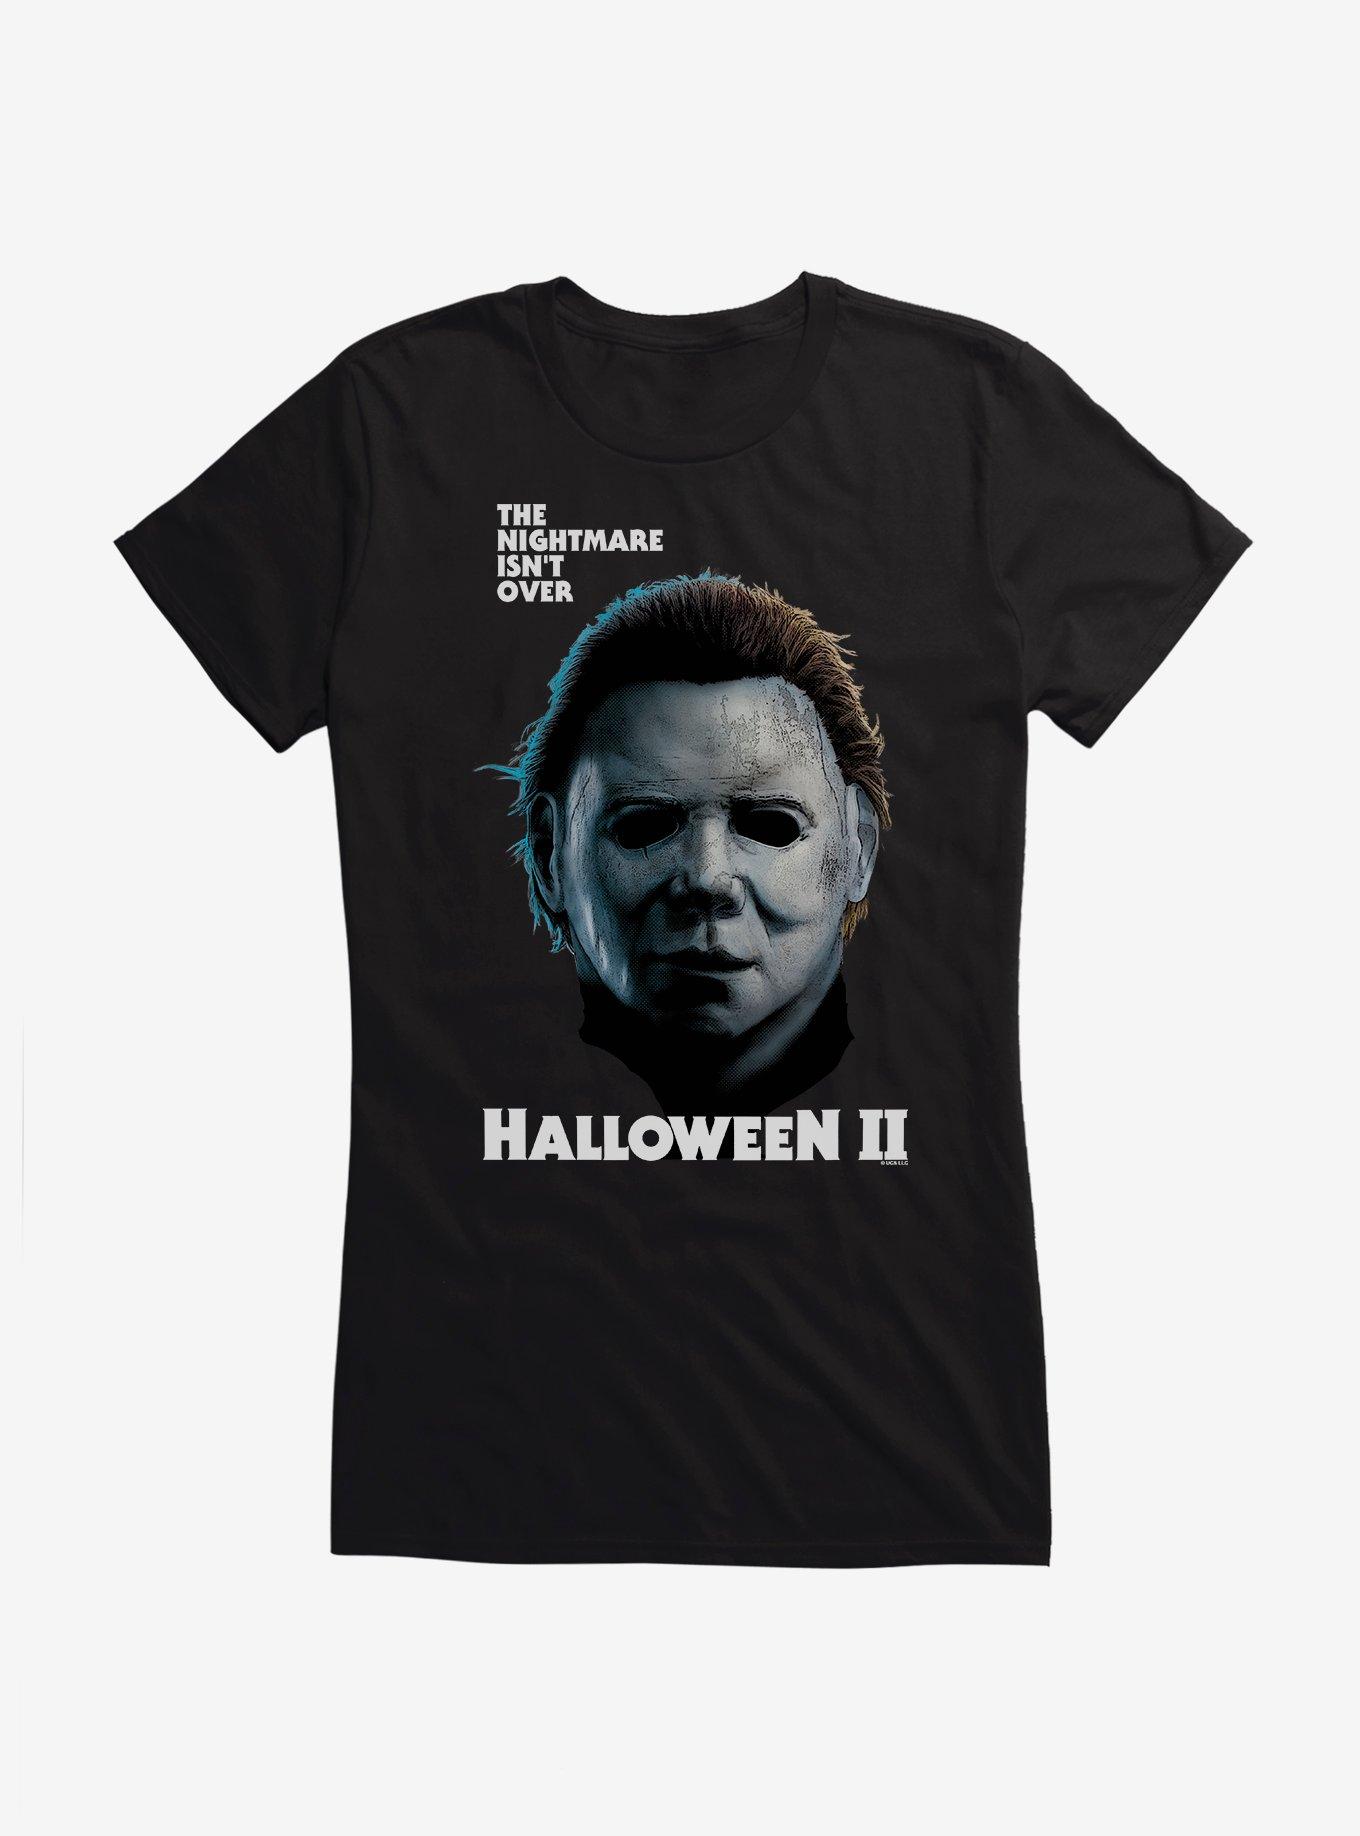 Halloween II The Nightmare Isn't Over Girls T-Shirt, BLACK, hi-res